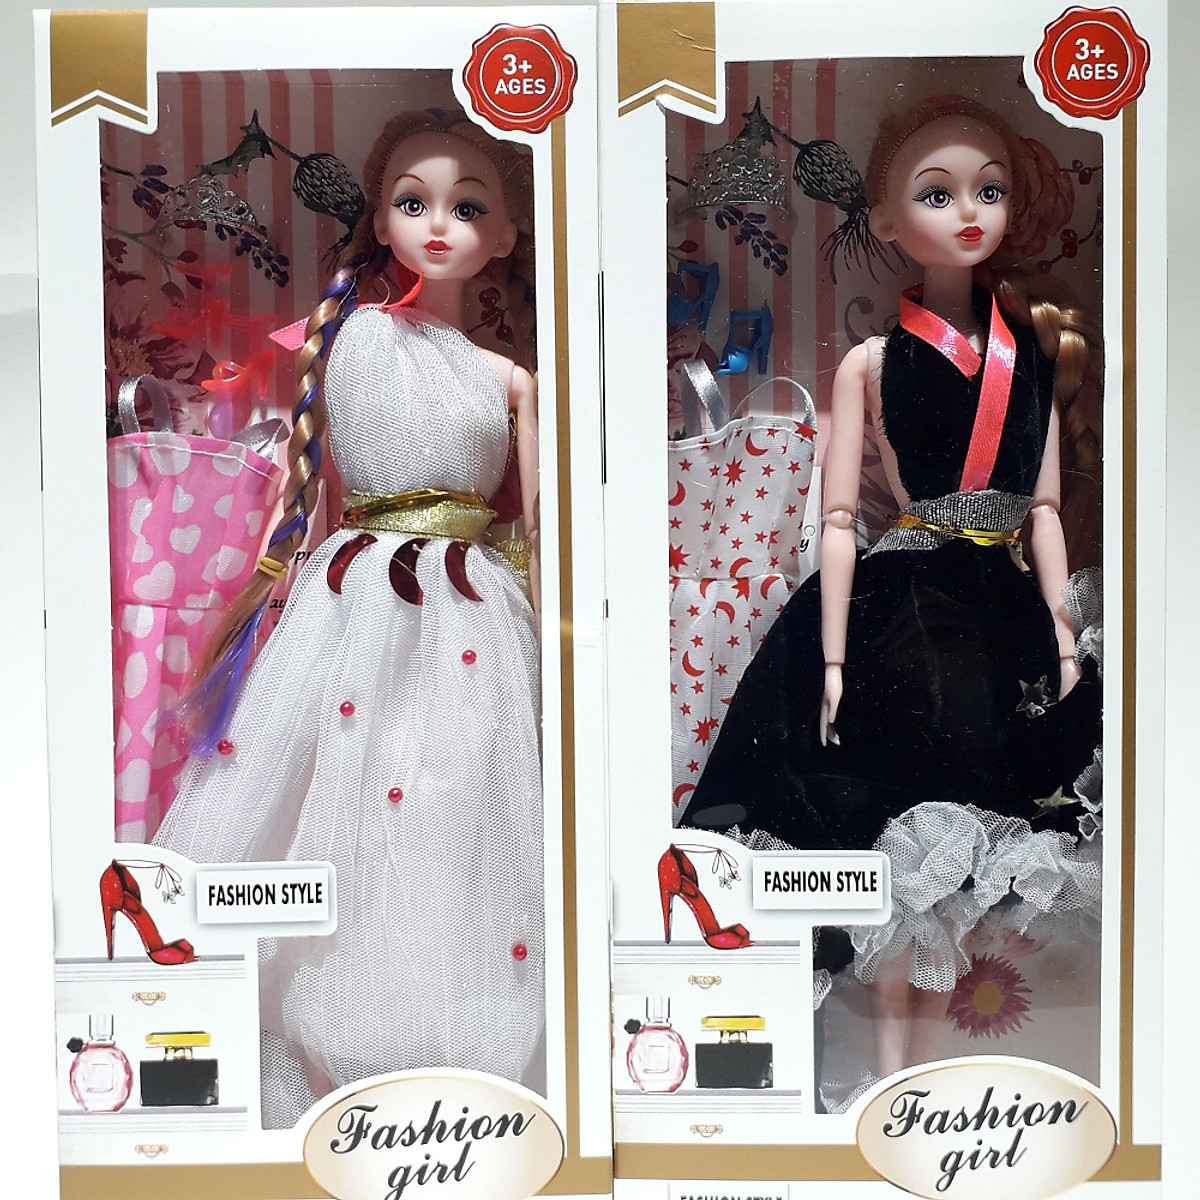 Hộp búp bê barbie kèm 1 áo đầm, giày, phụ kiện búp bê cho bé (giao